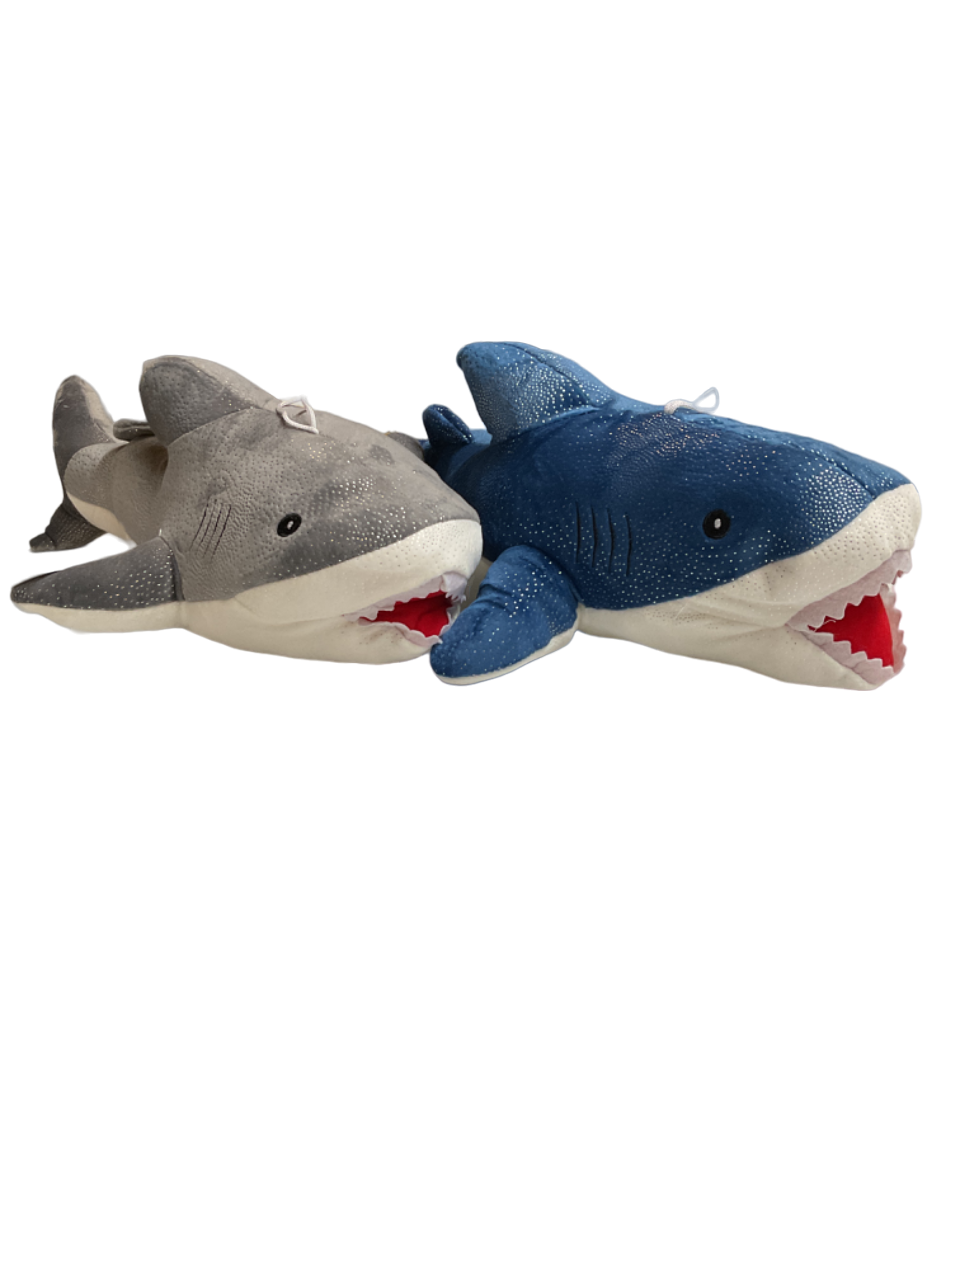 22" Shark Plush 1pc